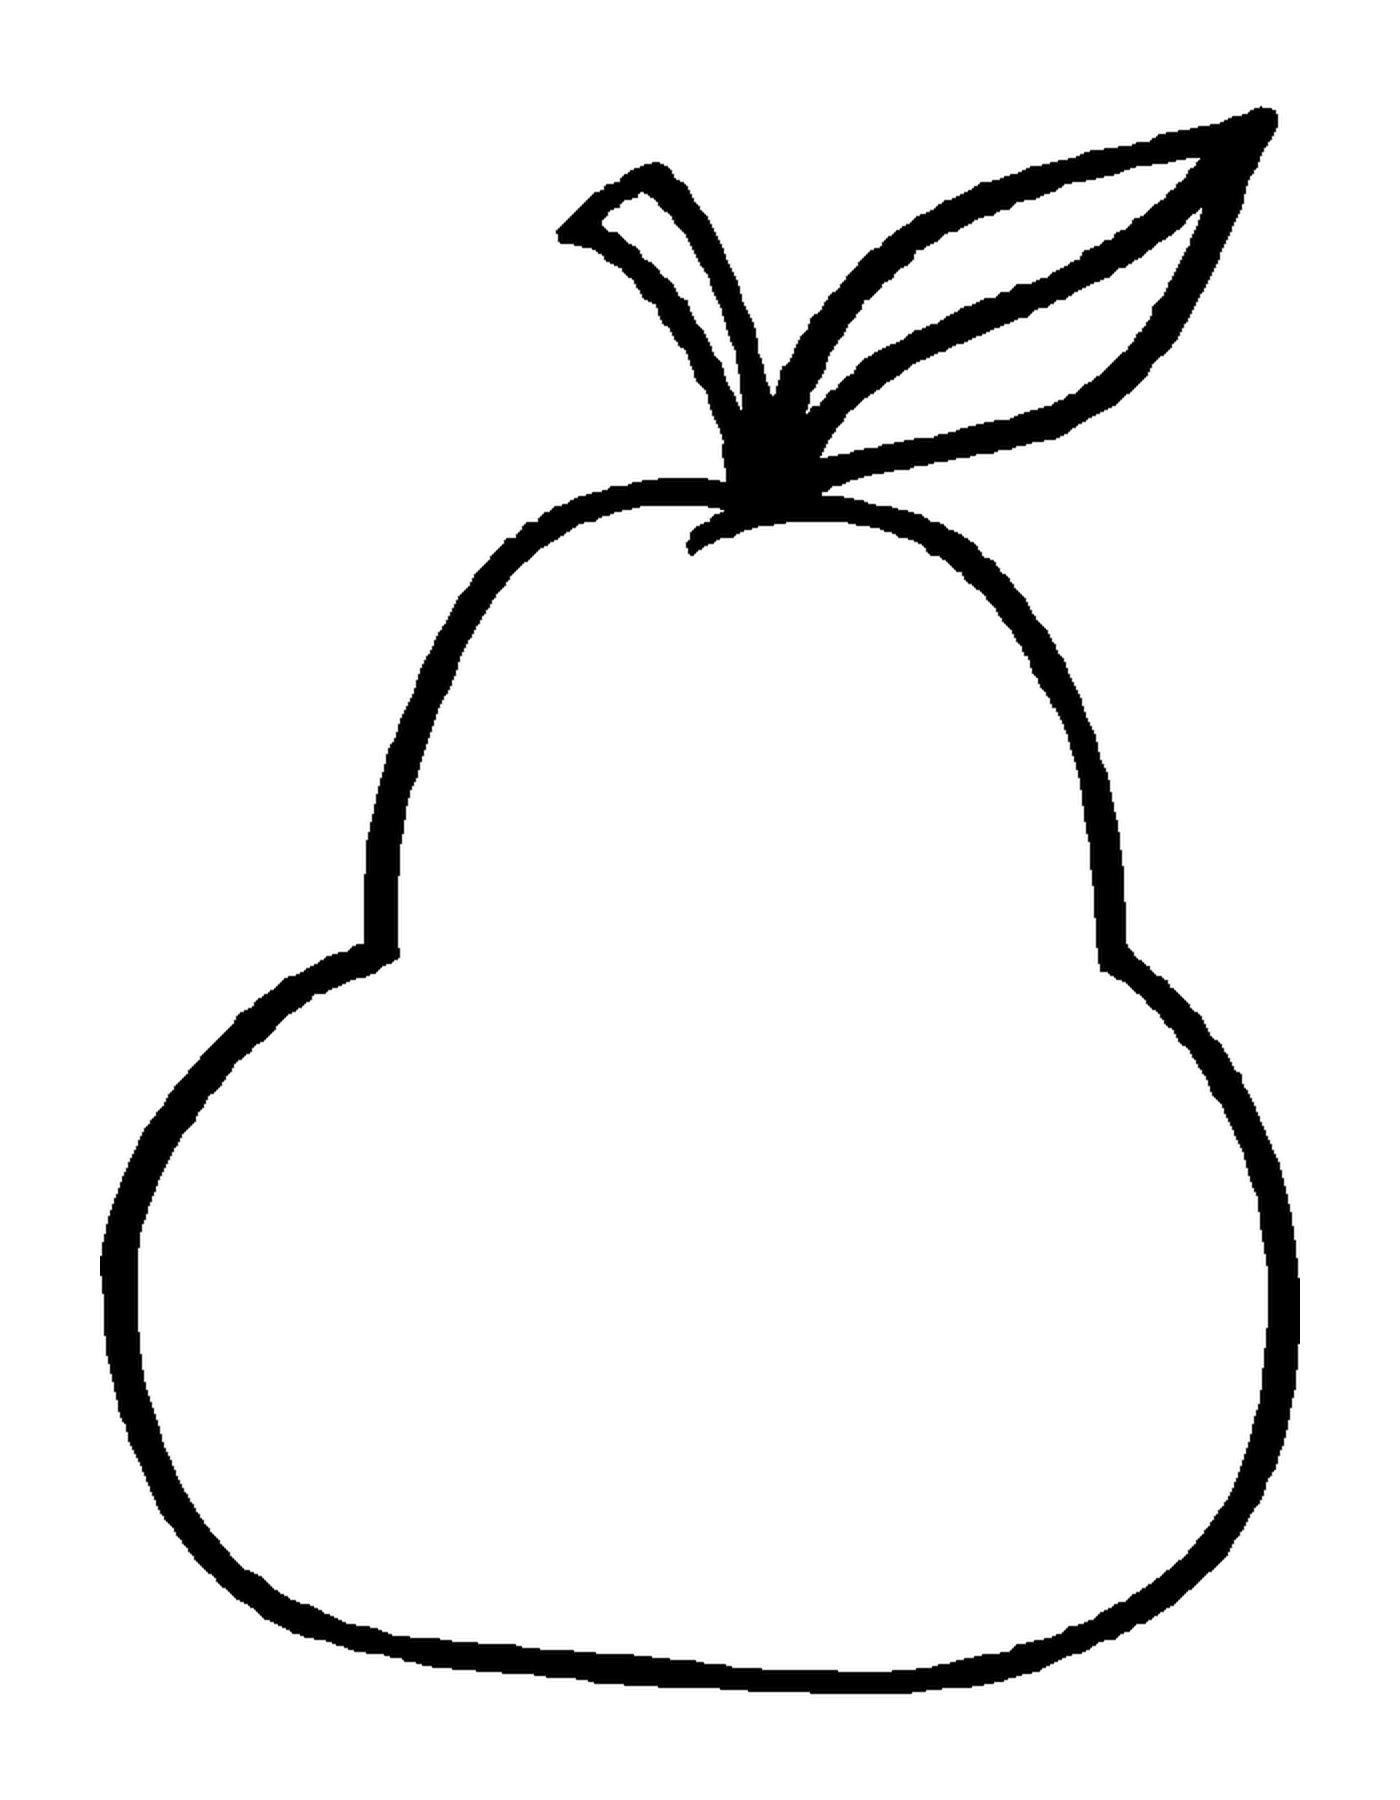  ilustración de una pera 